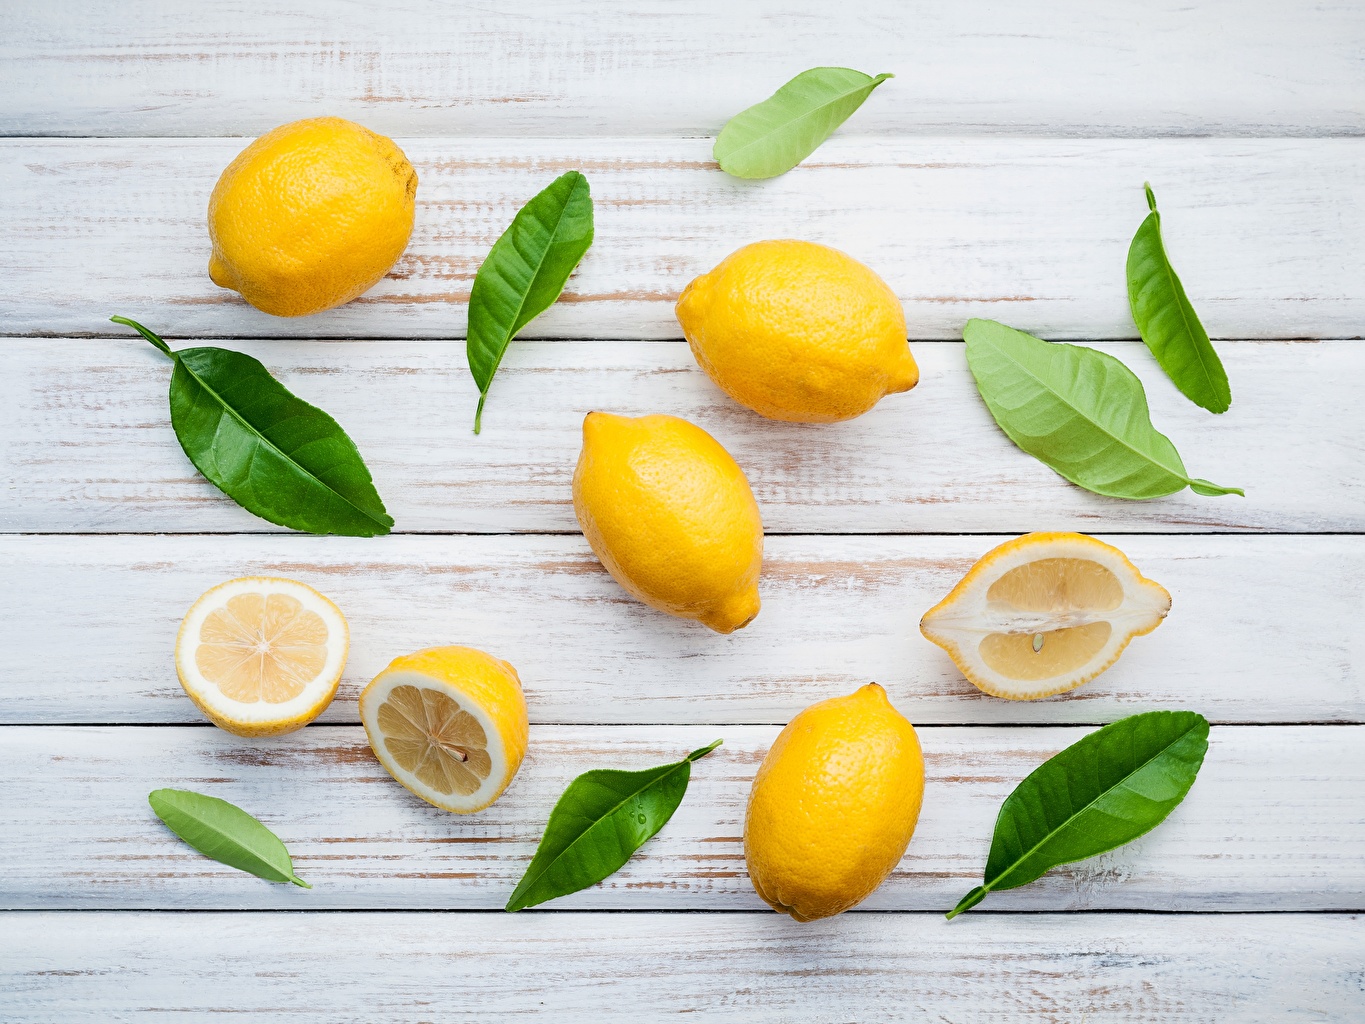 Целебные свойства лимона: правда или миф?